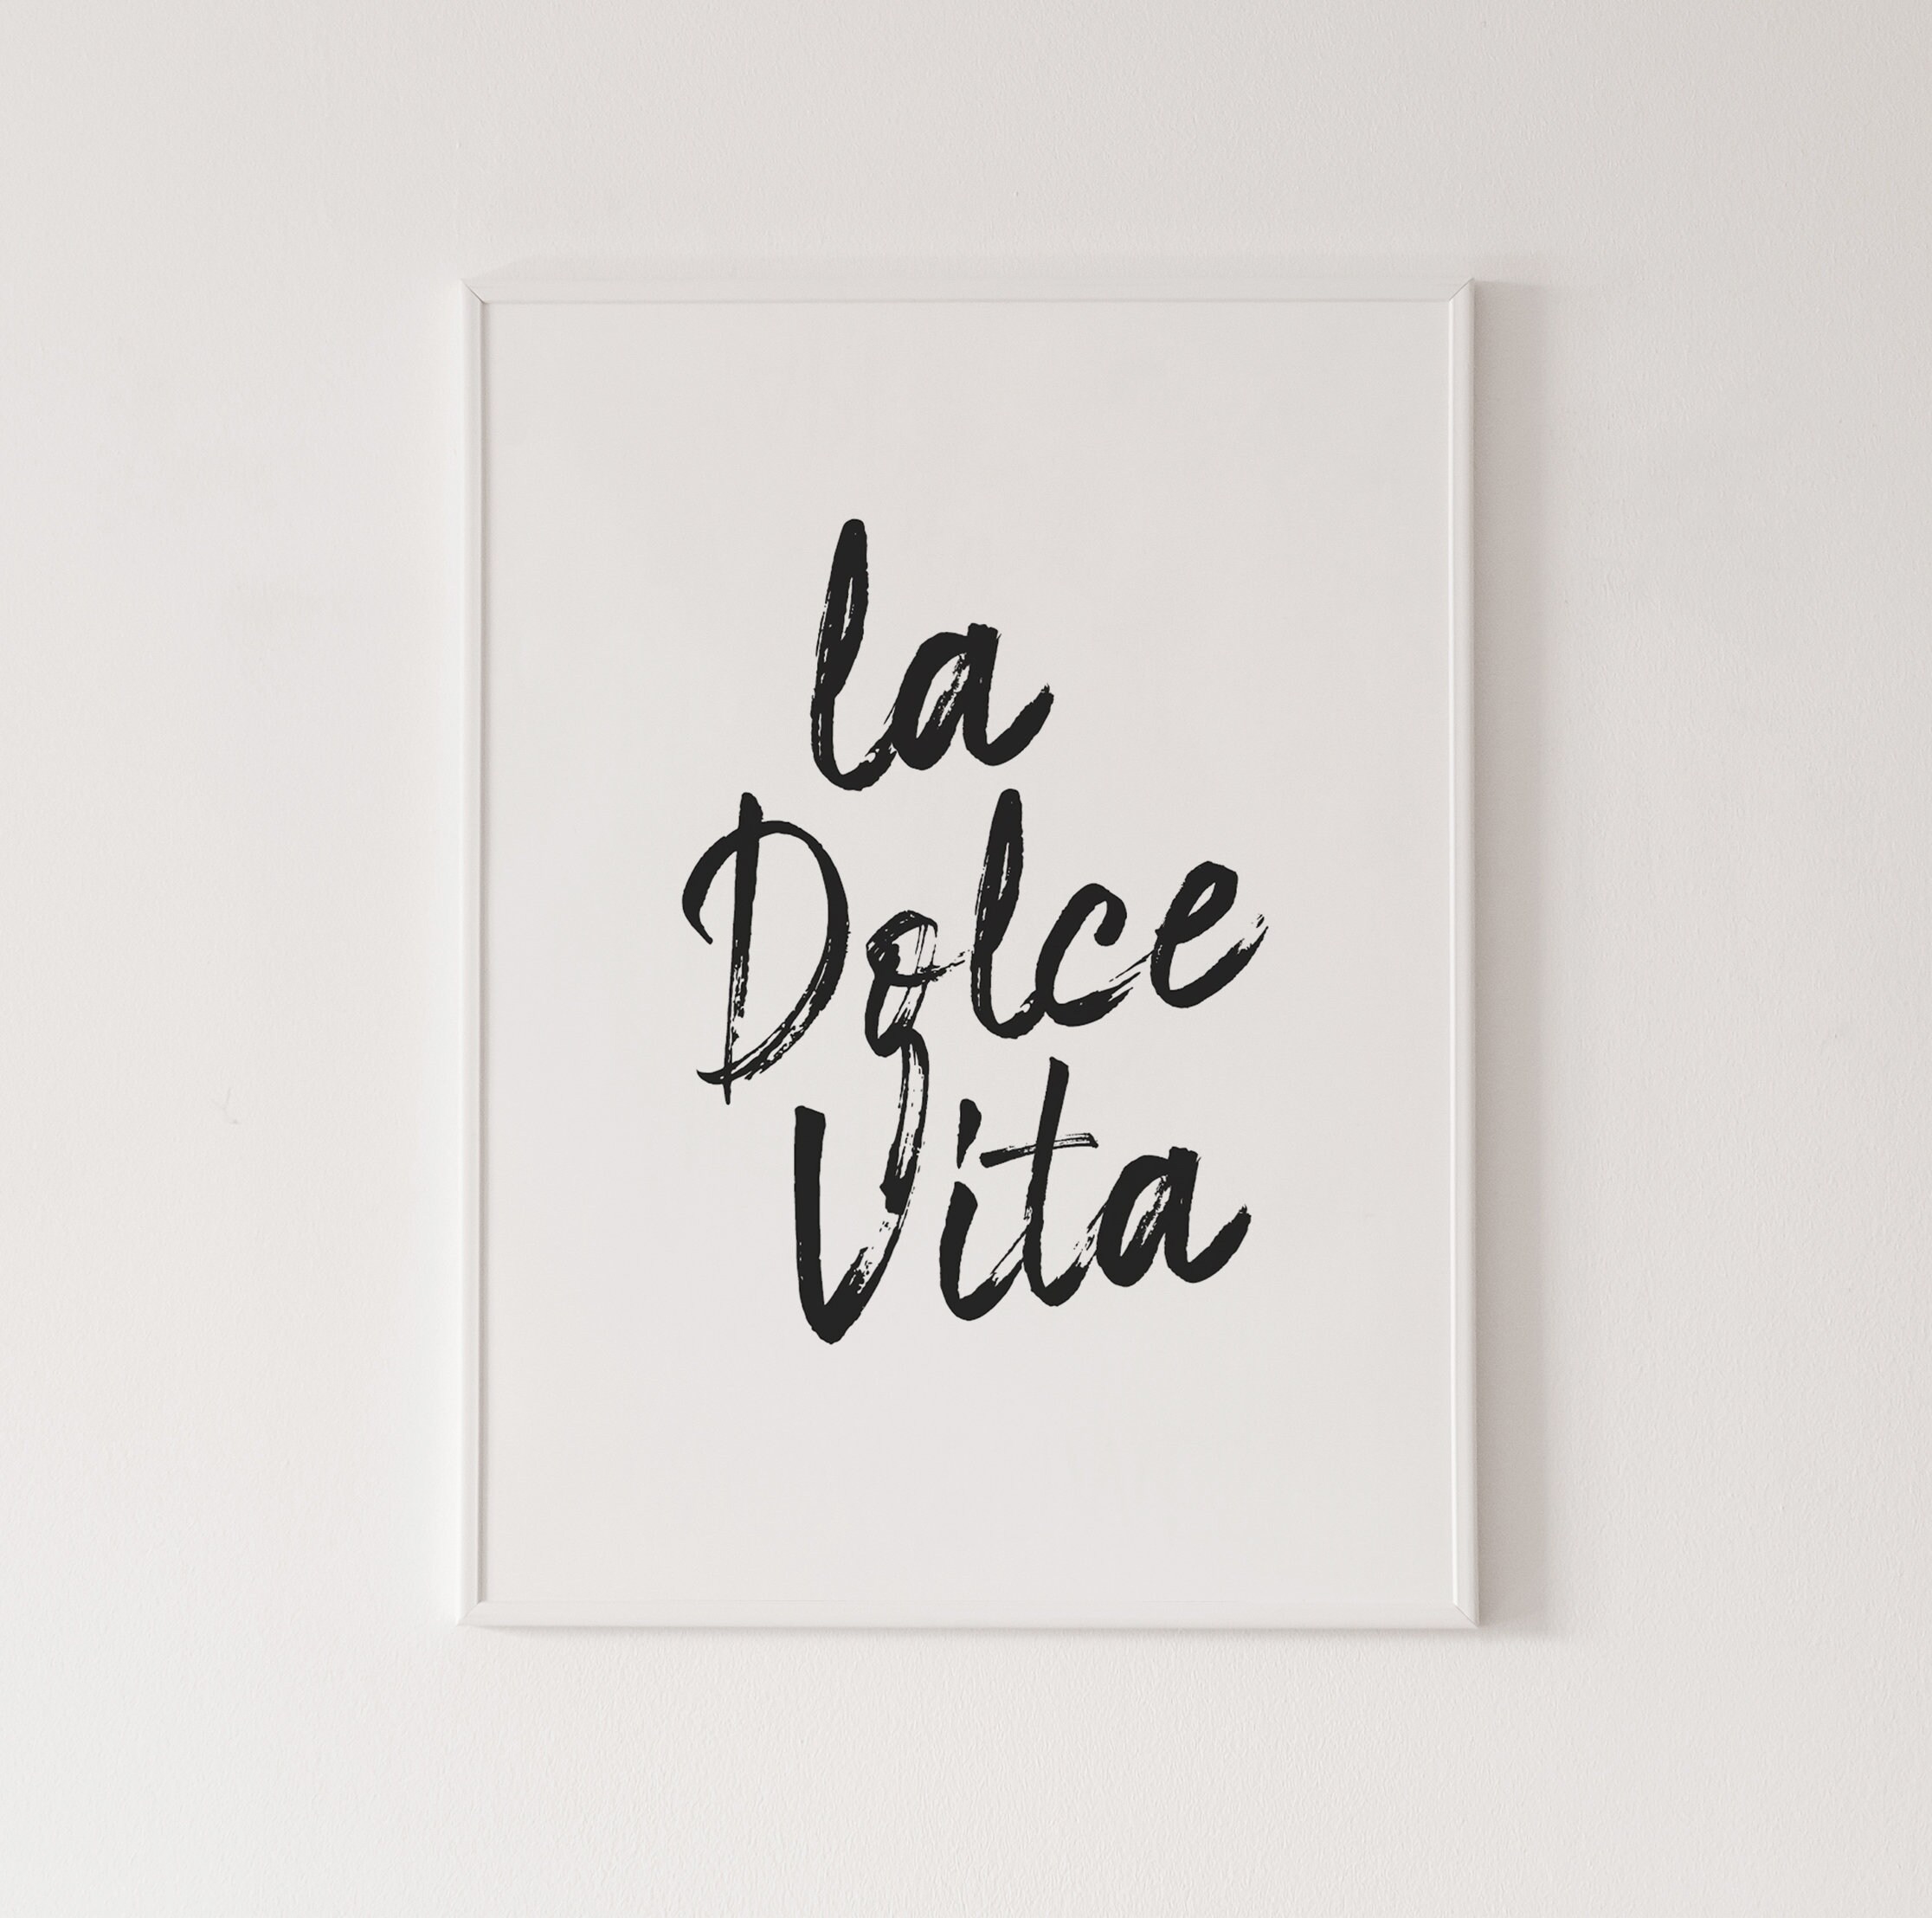 Fellini's La Dolce Vita Poster ✓ – Poster Museum